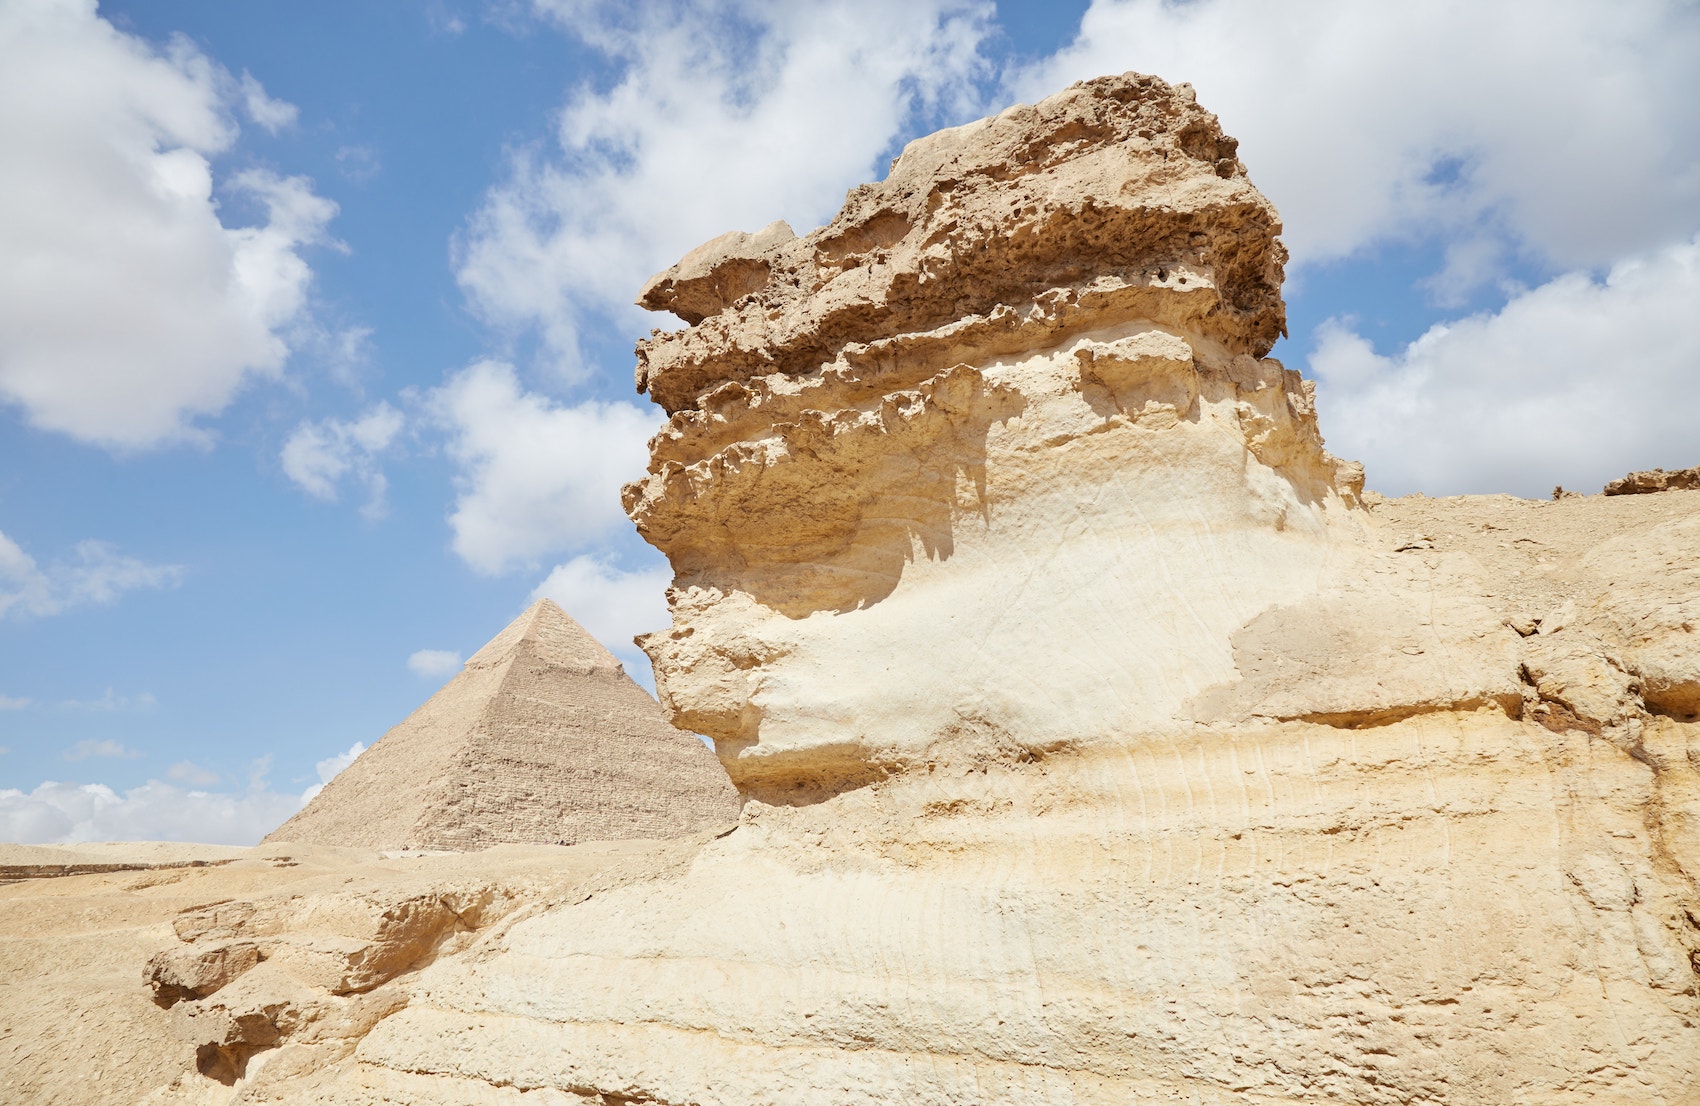 Second Sphinx Giza